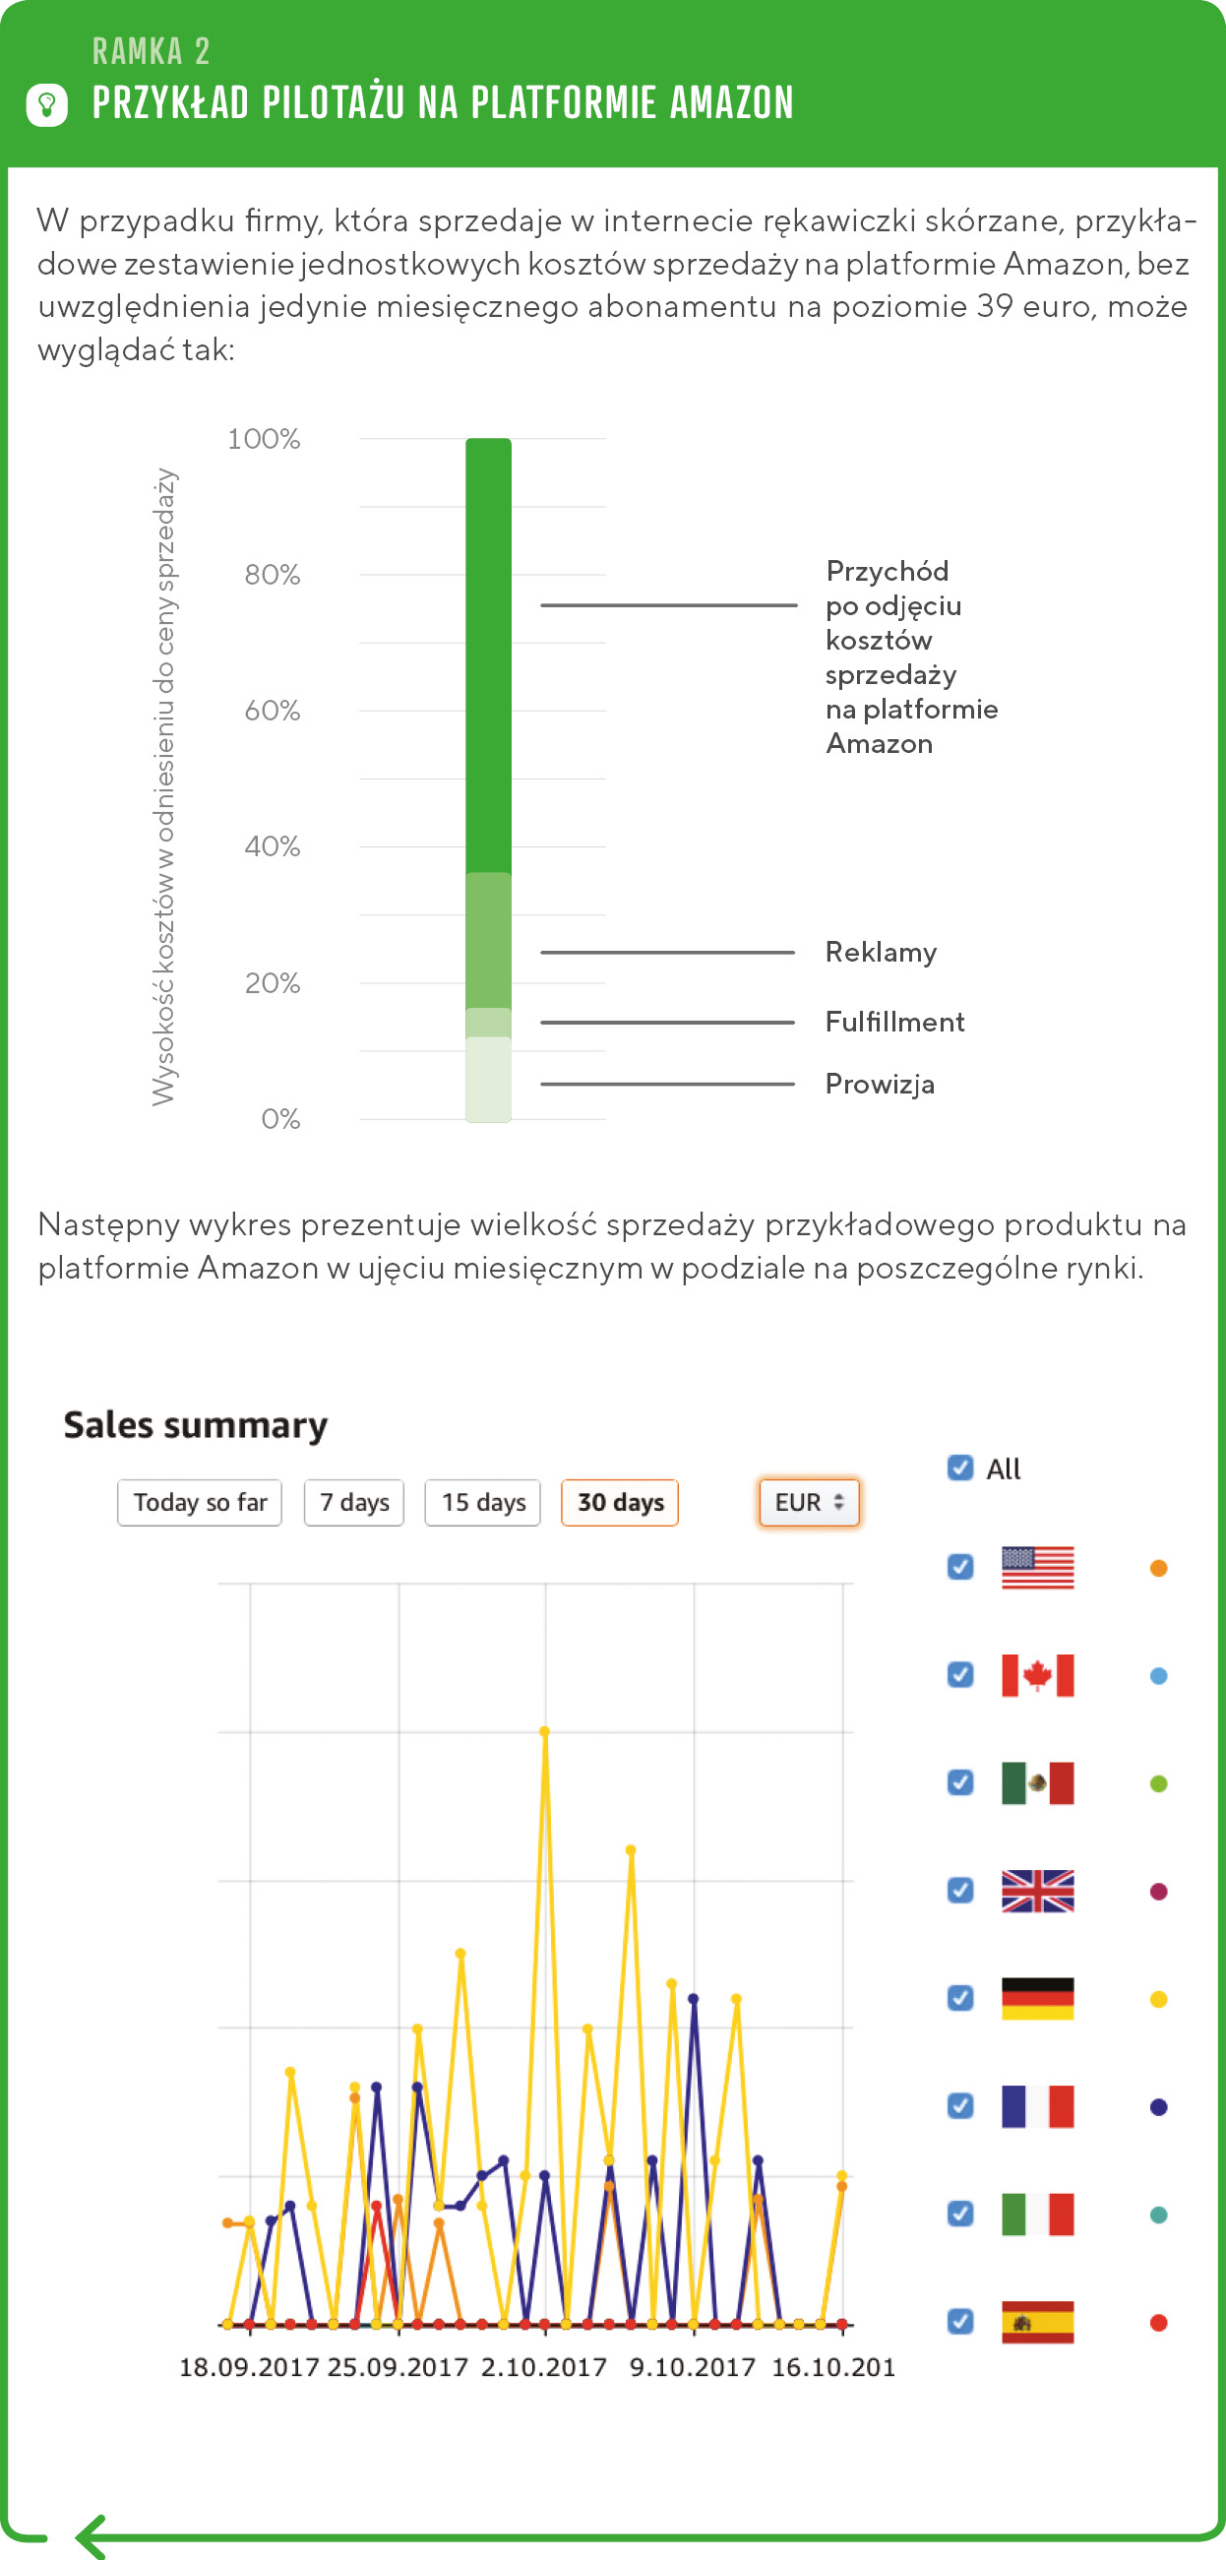 Ramka: Przykład pilotażu w platformie Amazon